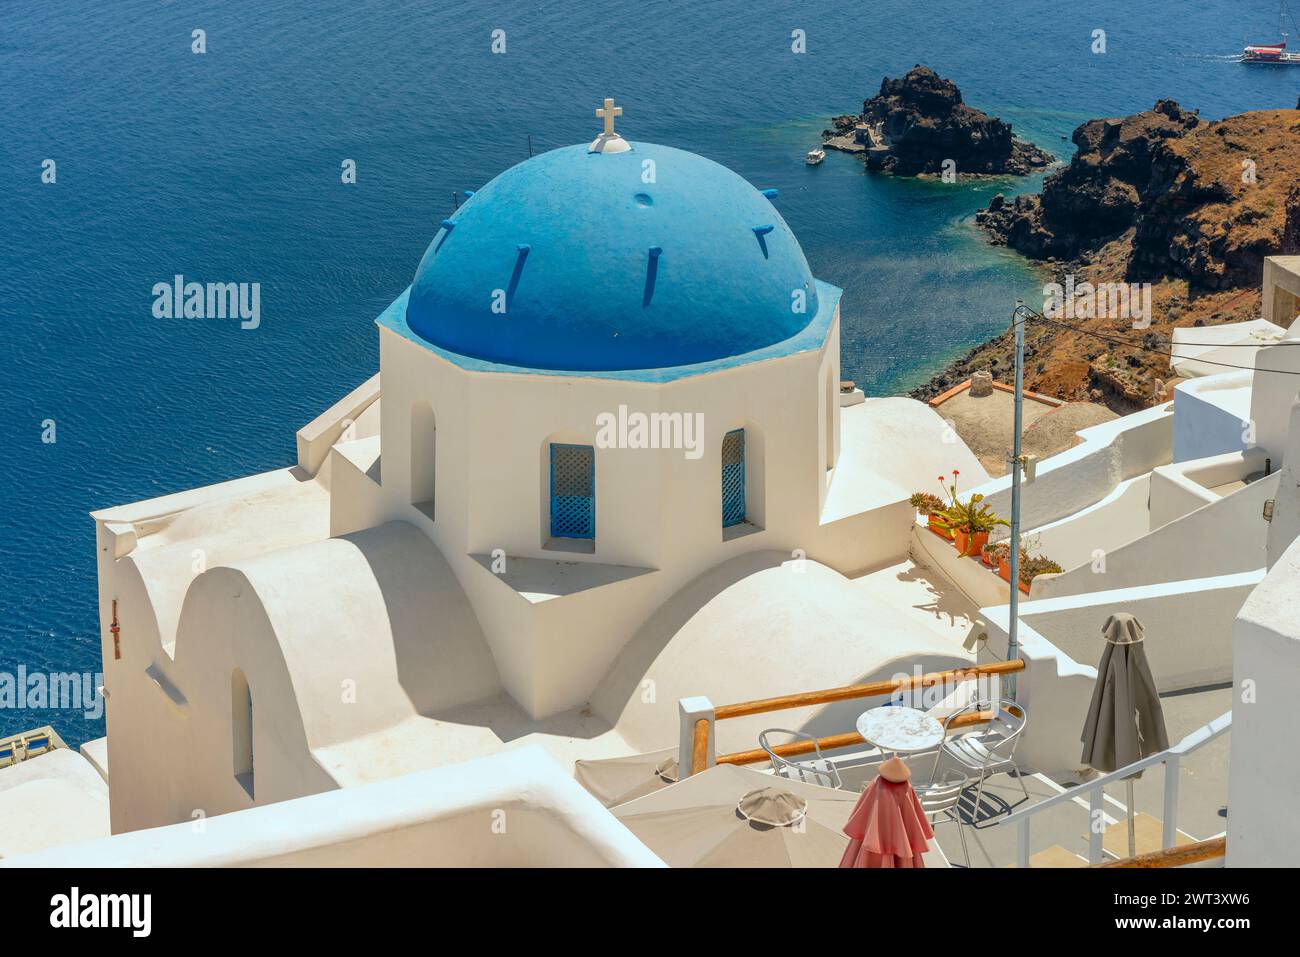 Nella foto contro il blu mare Egeo c'è un'iconica cappella a cupola blu, tipica di molte di quelle che si trovano sulla caldera di Santorini. Foto Stock